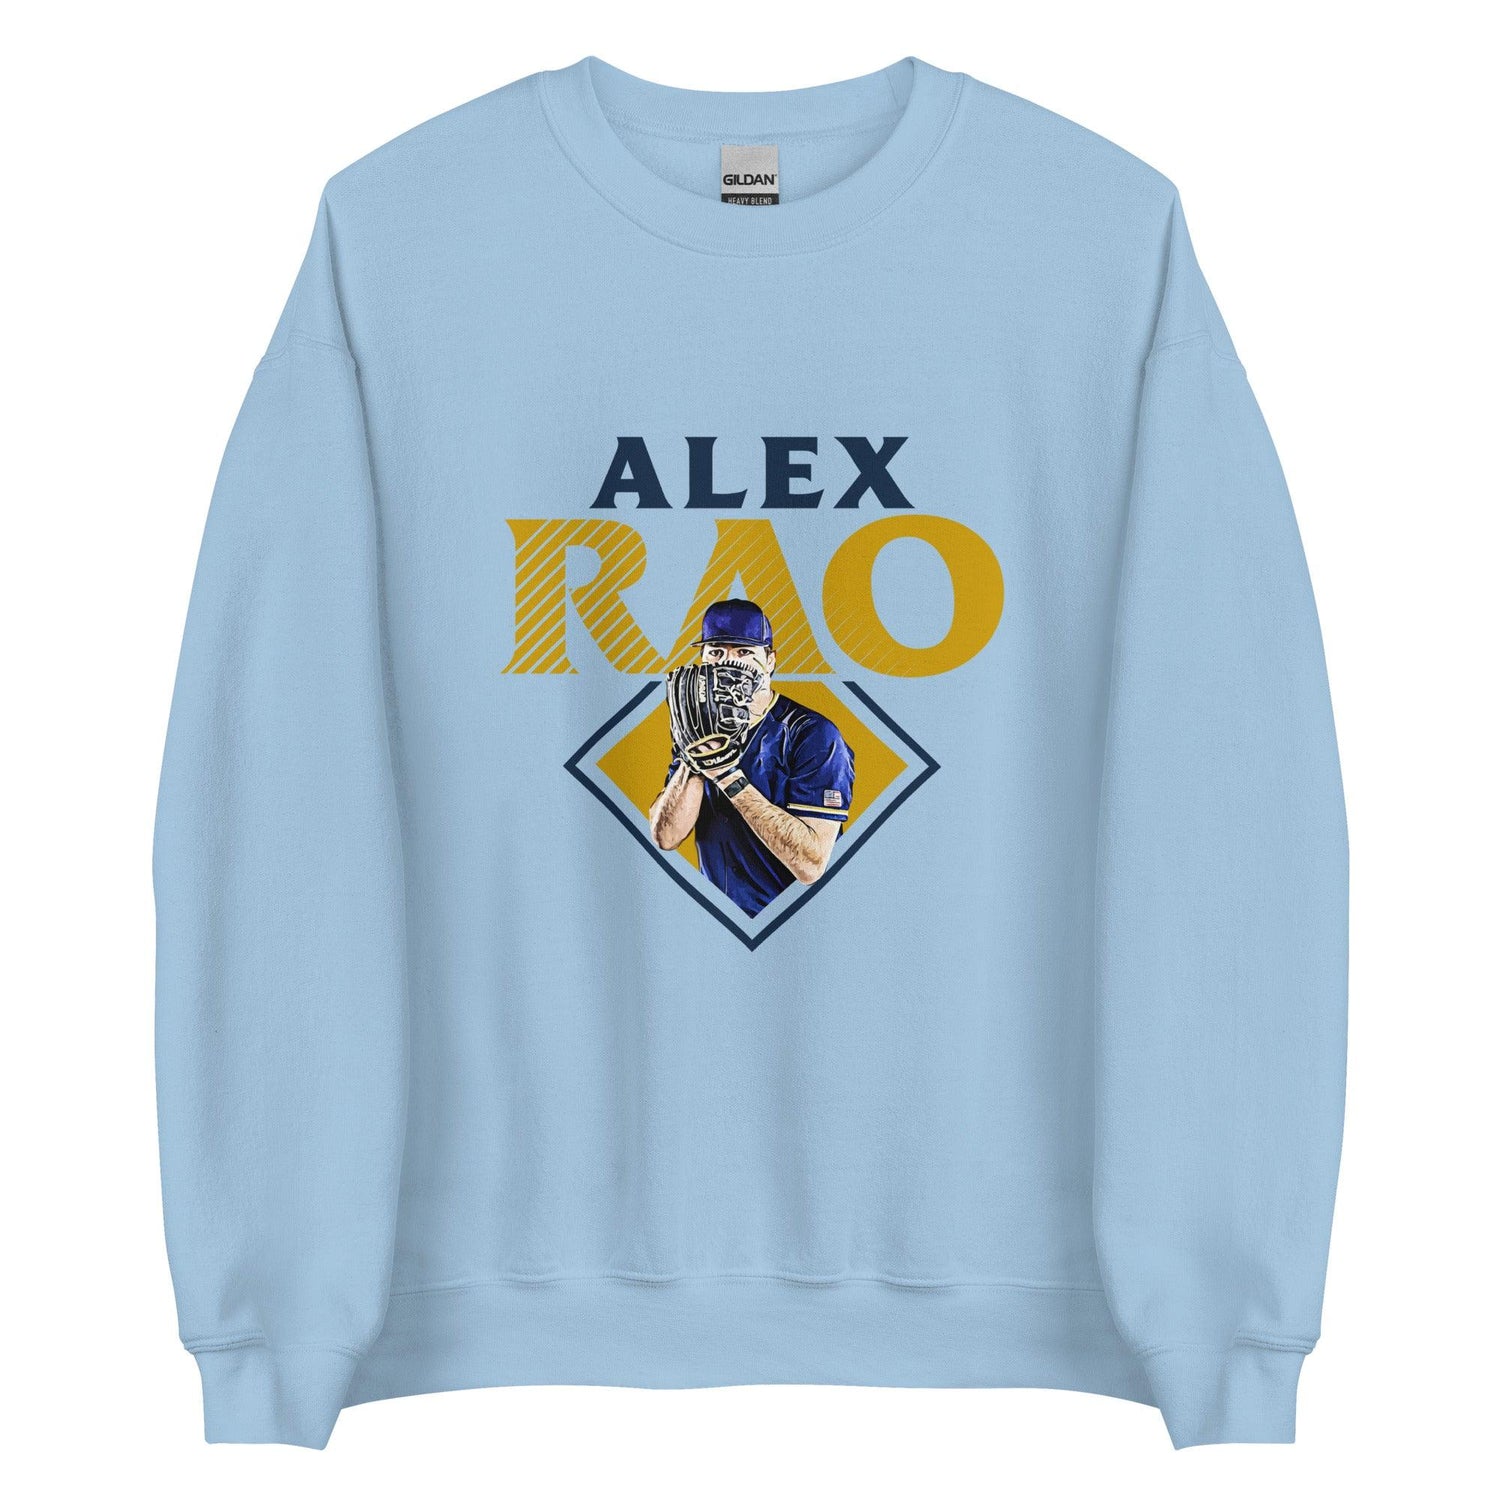 Alex Rao "Essential" Sweatshirt - Fan Arch